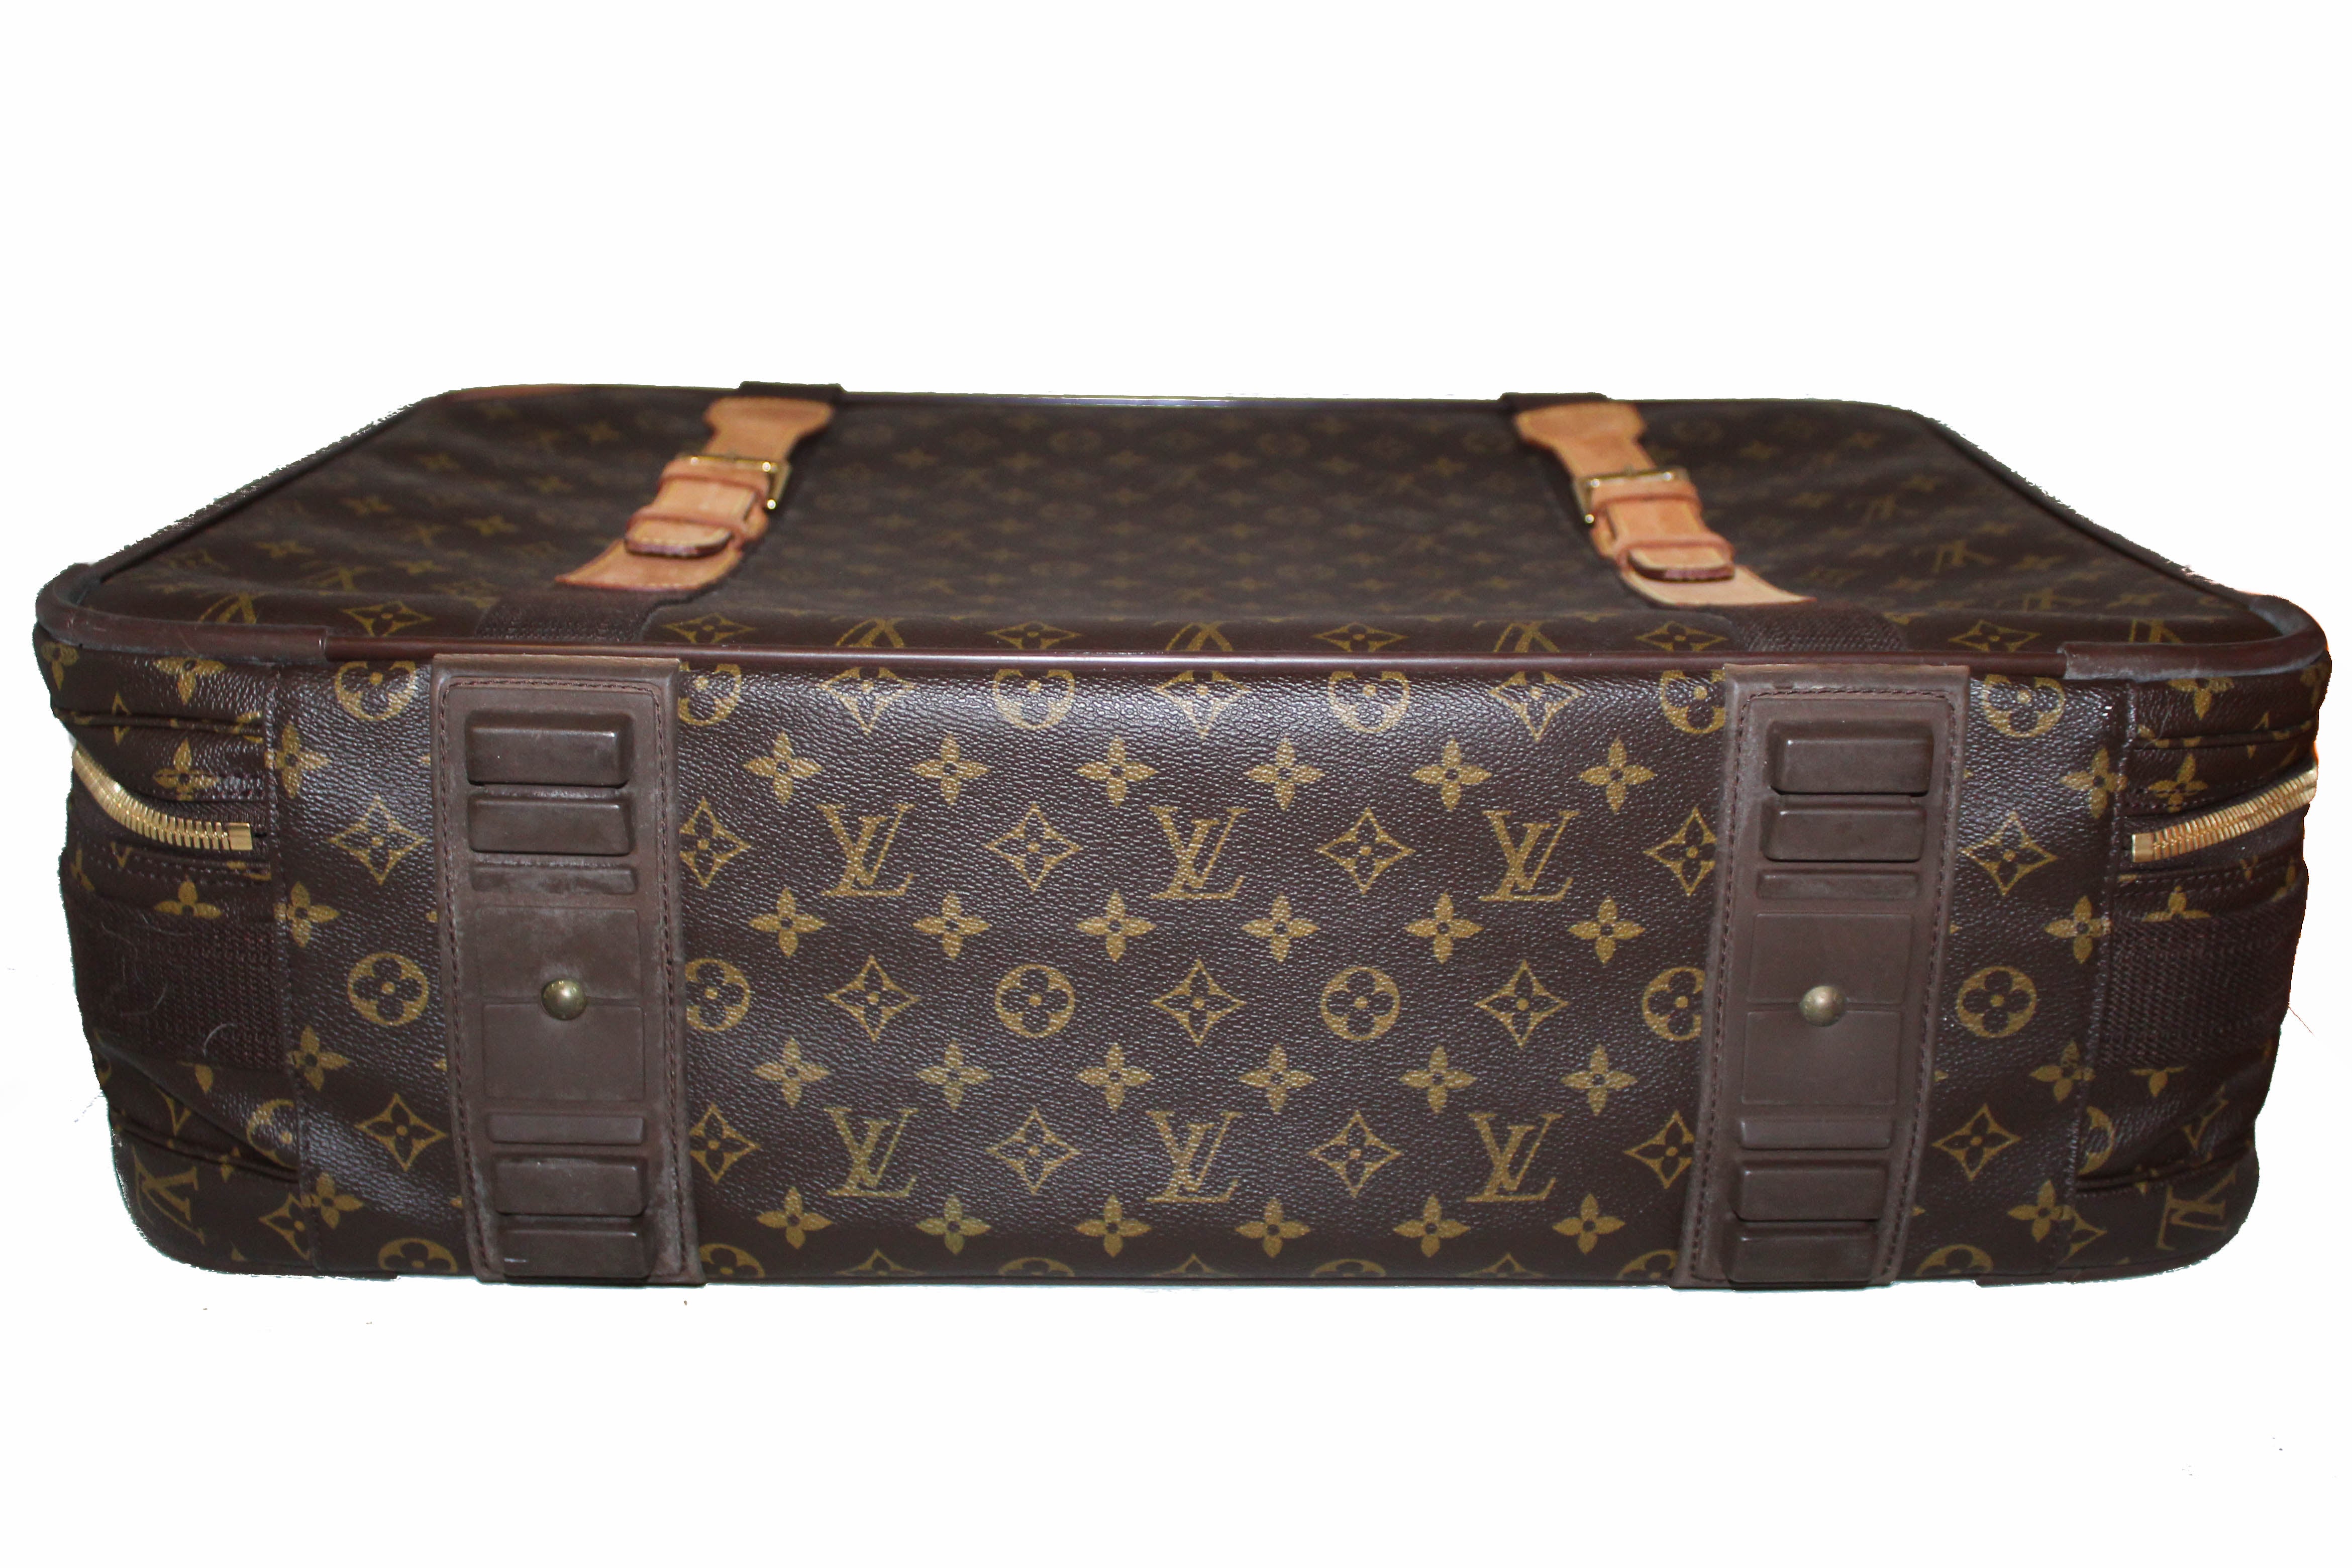 Authentic Louis Vuitton Monogram Satellite 65 Suitcase